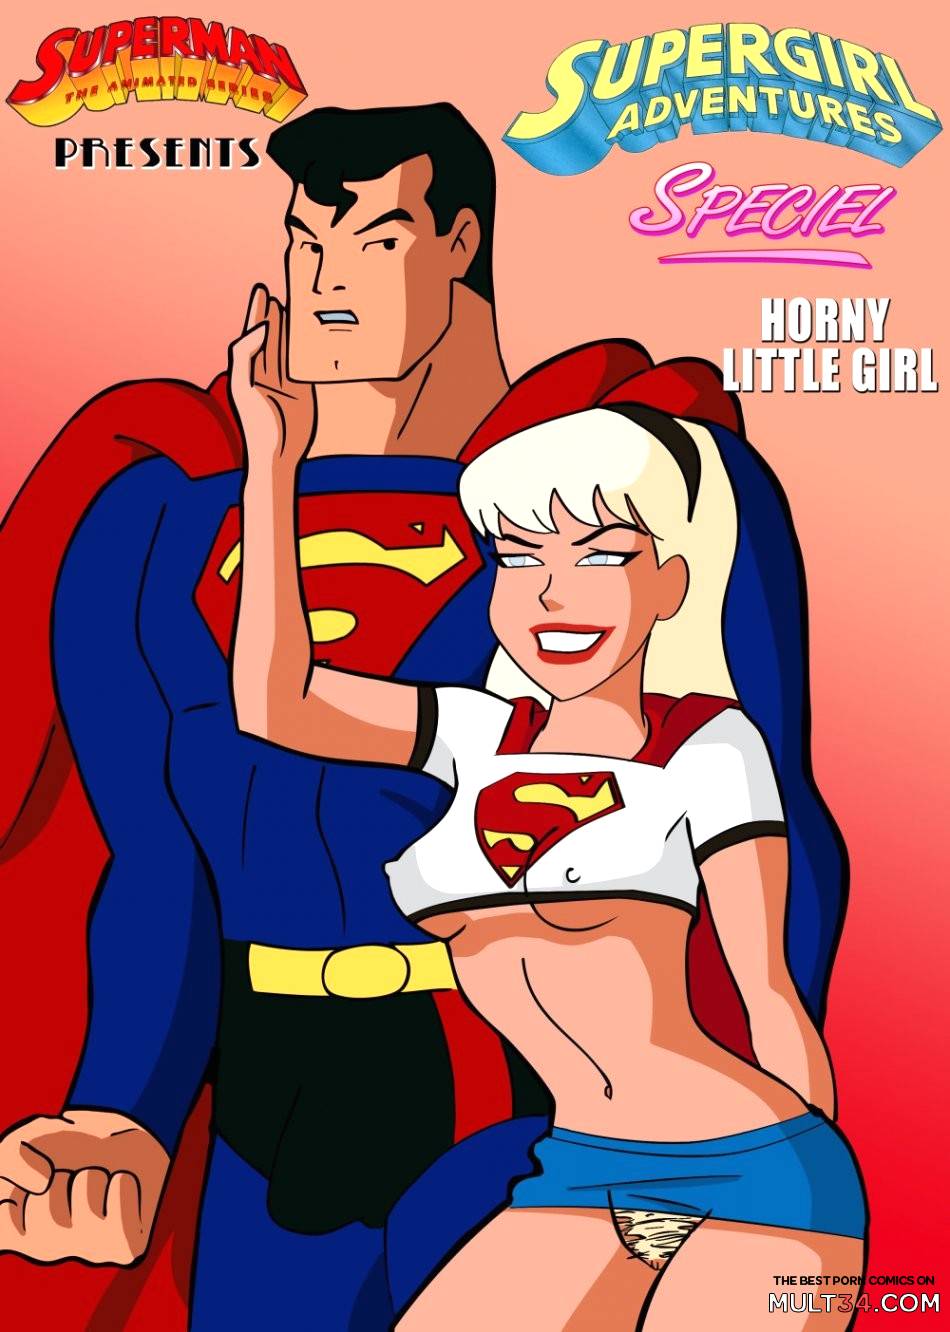 Supergirl Cartoon Porn Bondage - Supergirl Adventures porn comic - the best cartoon porn comics, Rule 34 |  MULT34